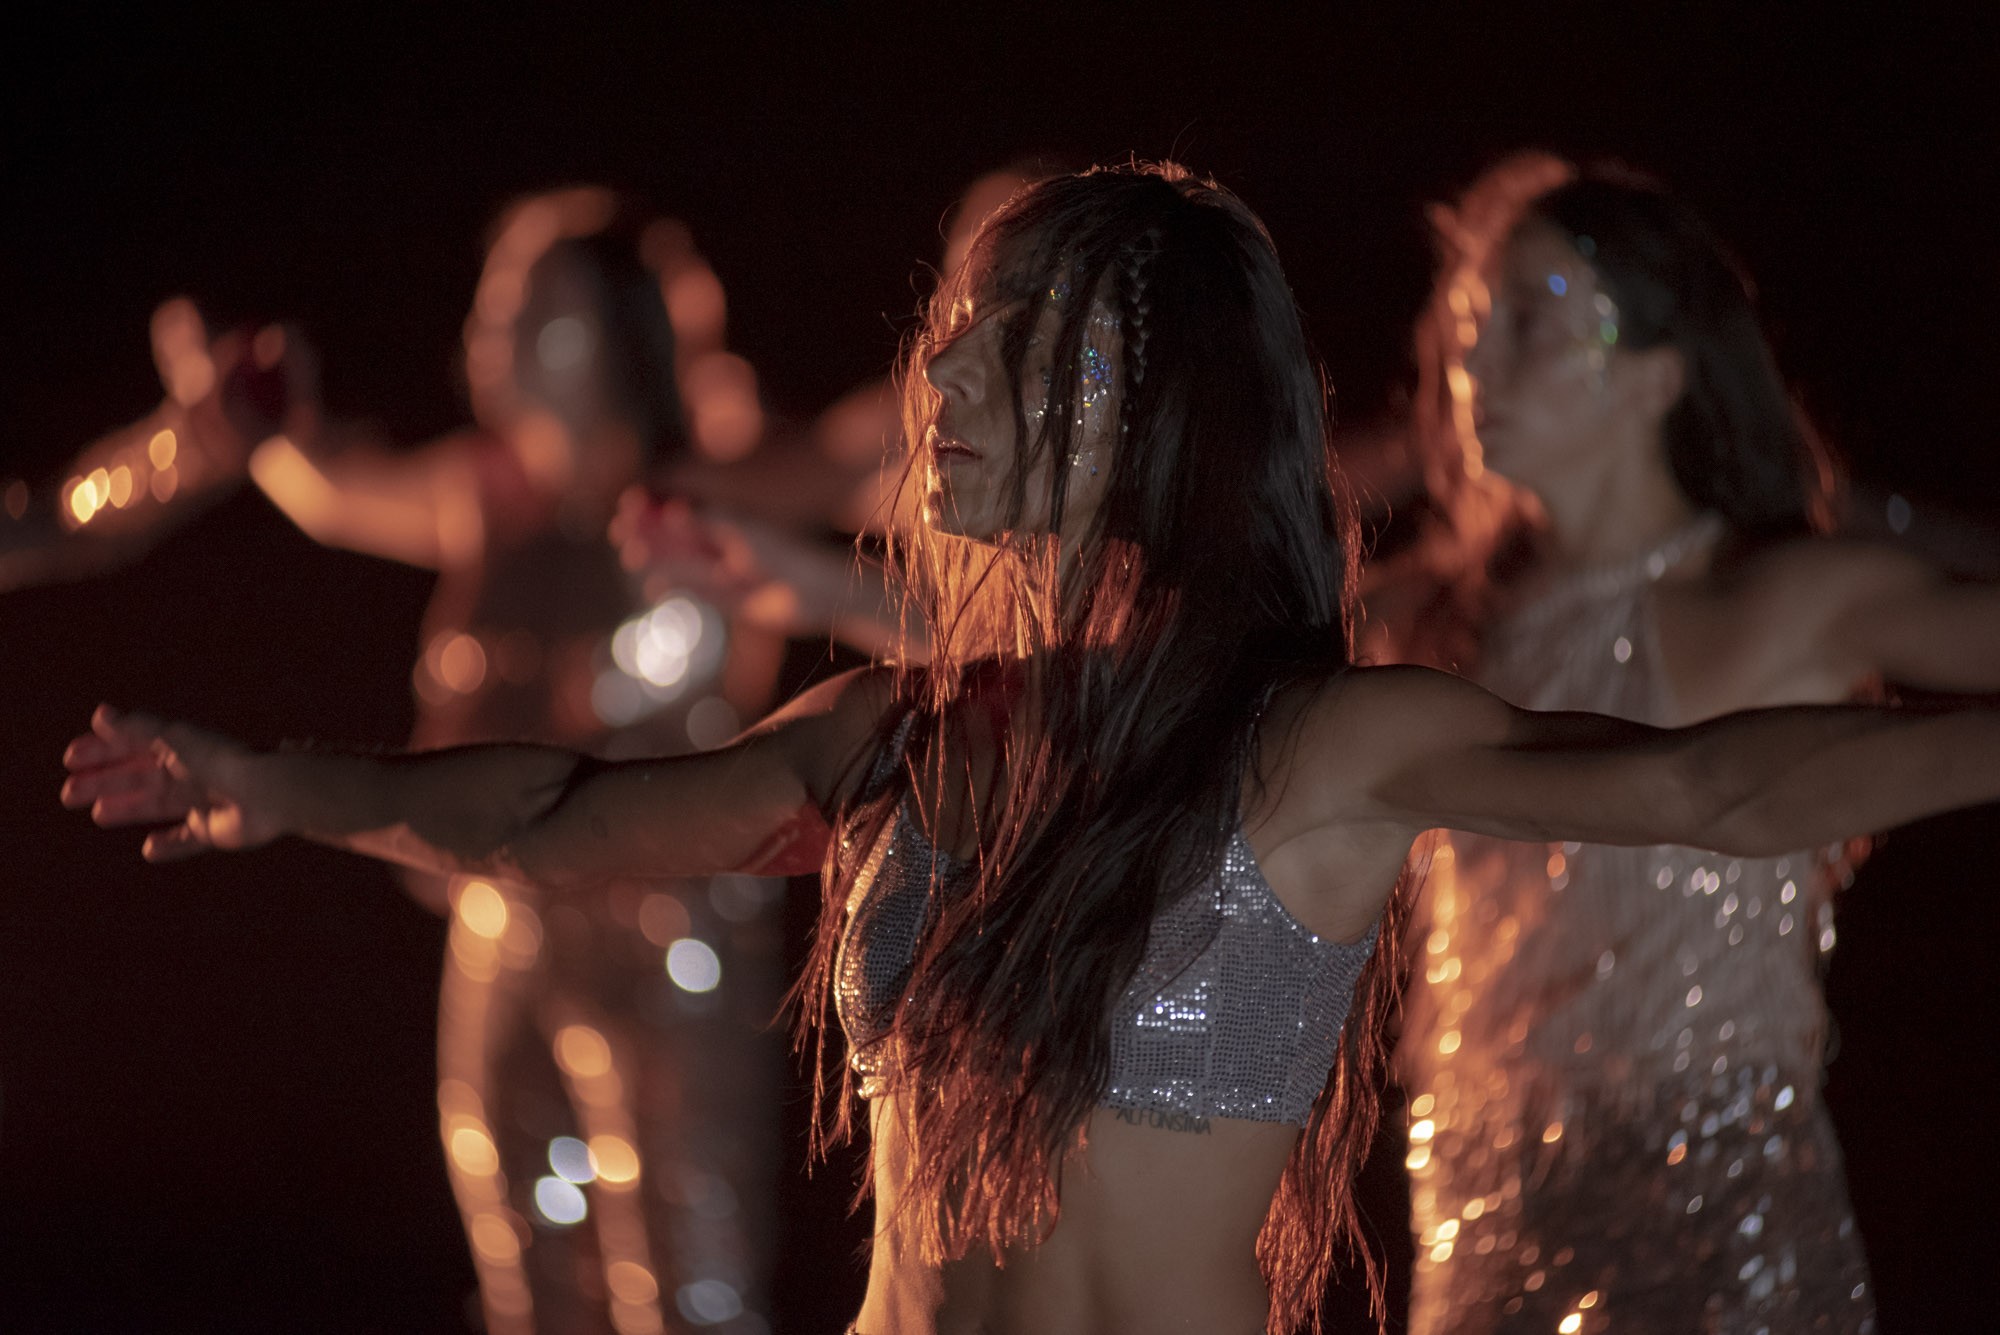 La coreógrafa brasileña Poliana Lima presenta en el TEM un espectáculo de danza basado en el sonido de los cuerpos de sus 12 bailarinas